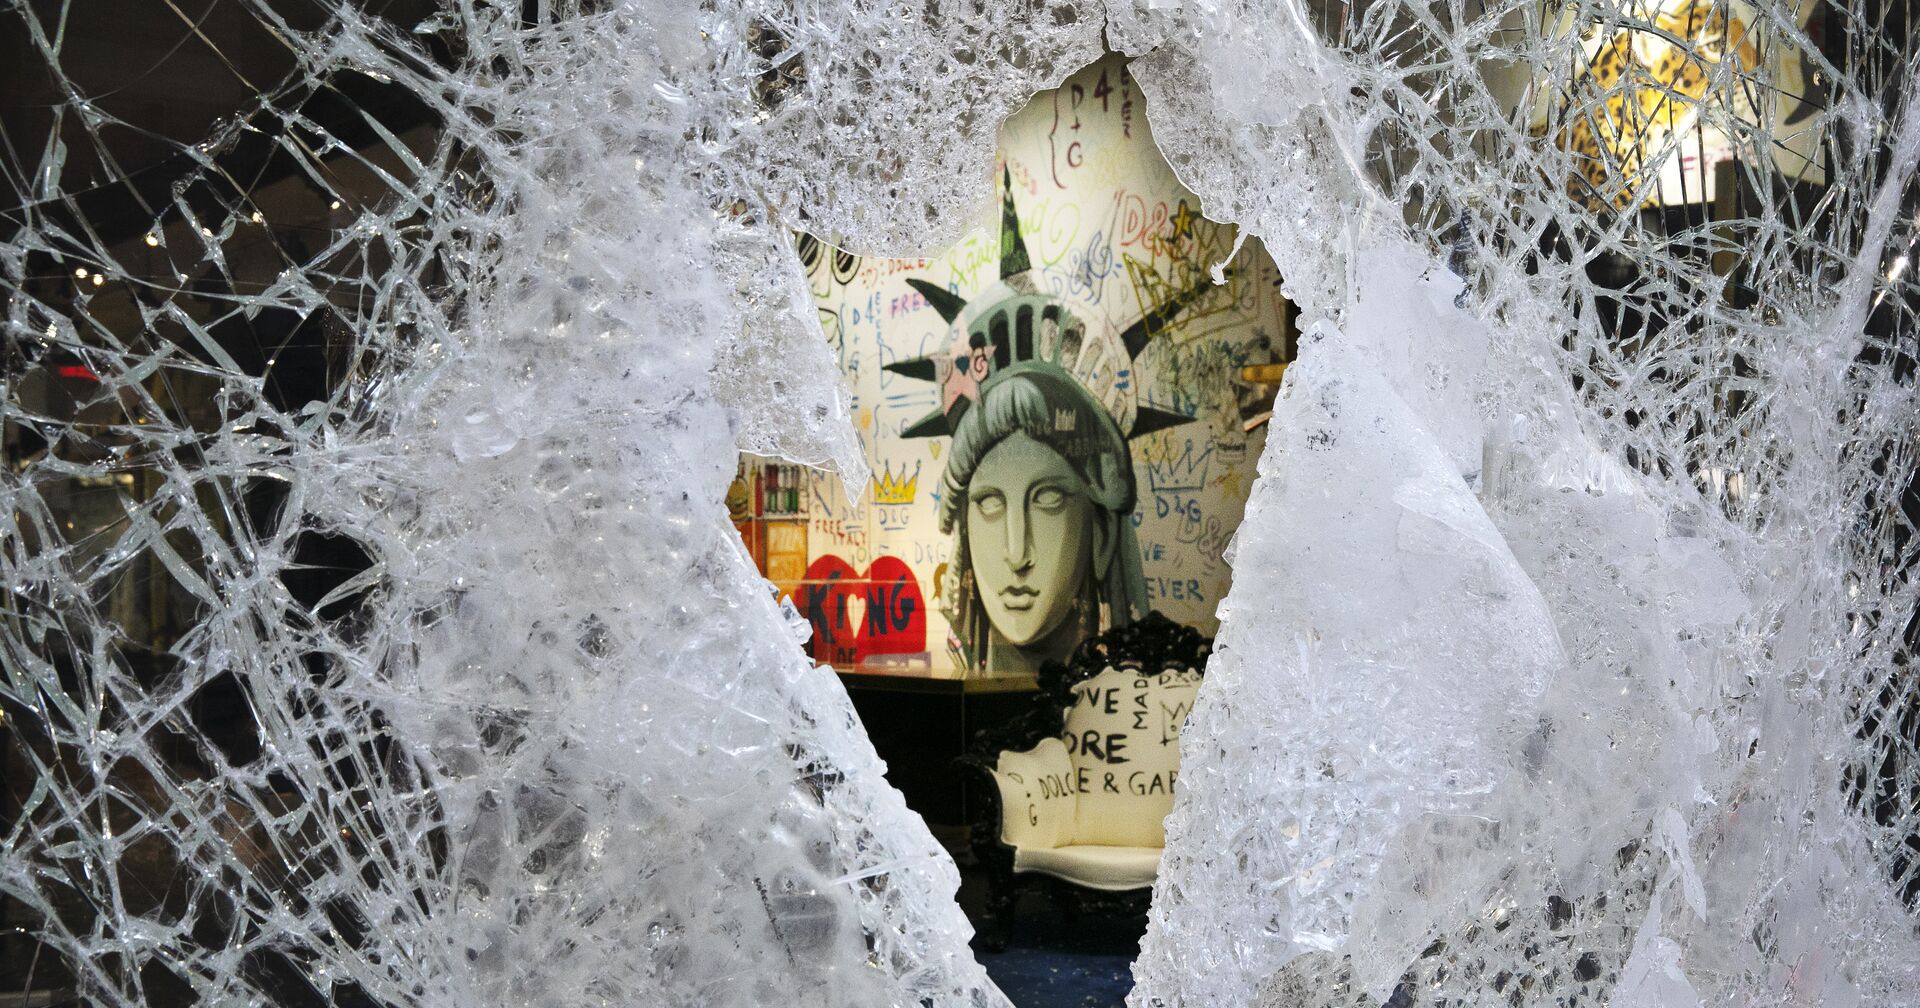 Граффити, изображающее лицо Статуи свободы, через разбитую витрину магазина в Нью-Йорке, США - ИноСМИ, 1920, 06.11.2020